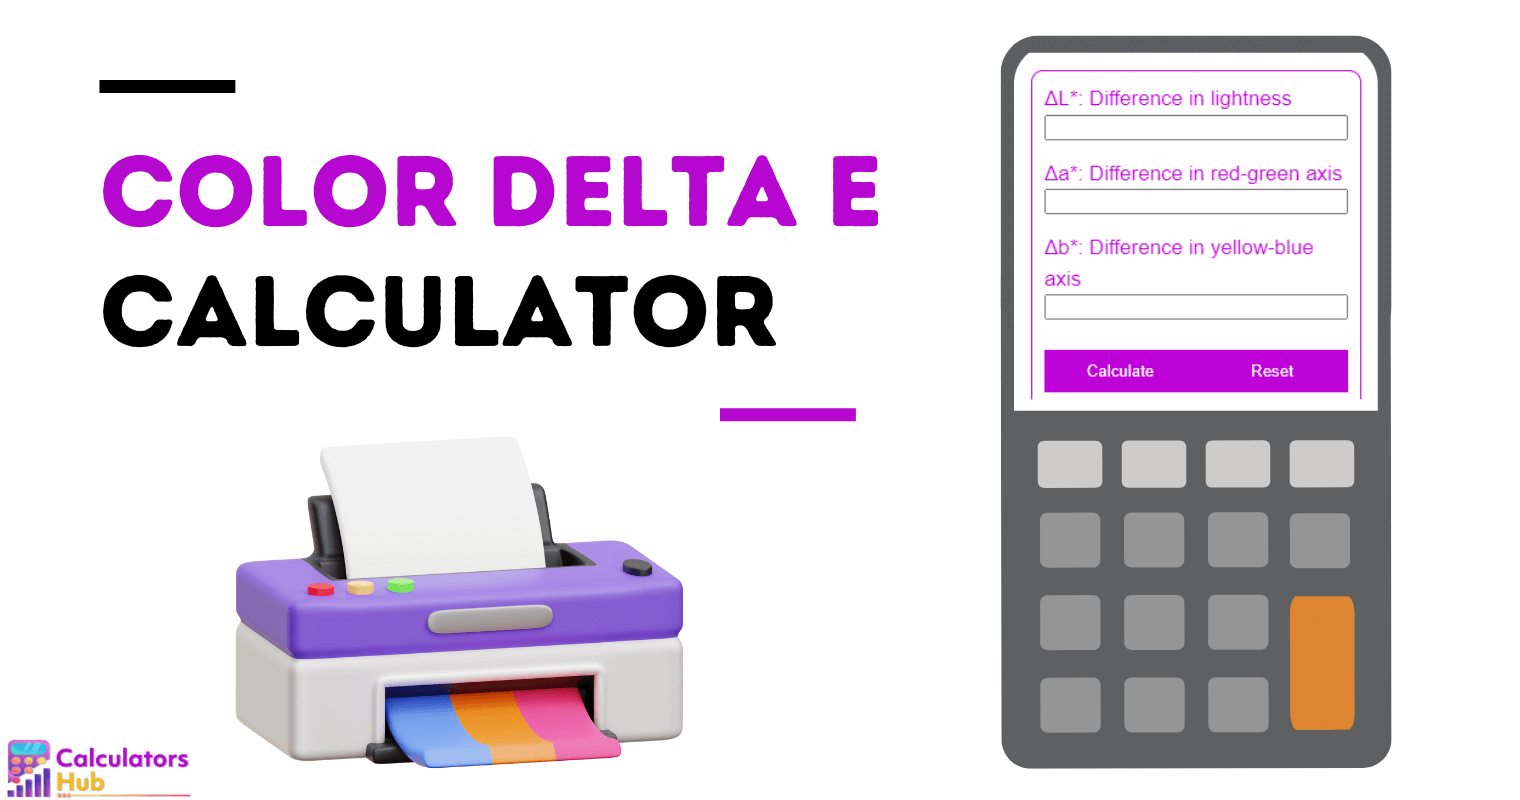 Color Delta E Calculator